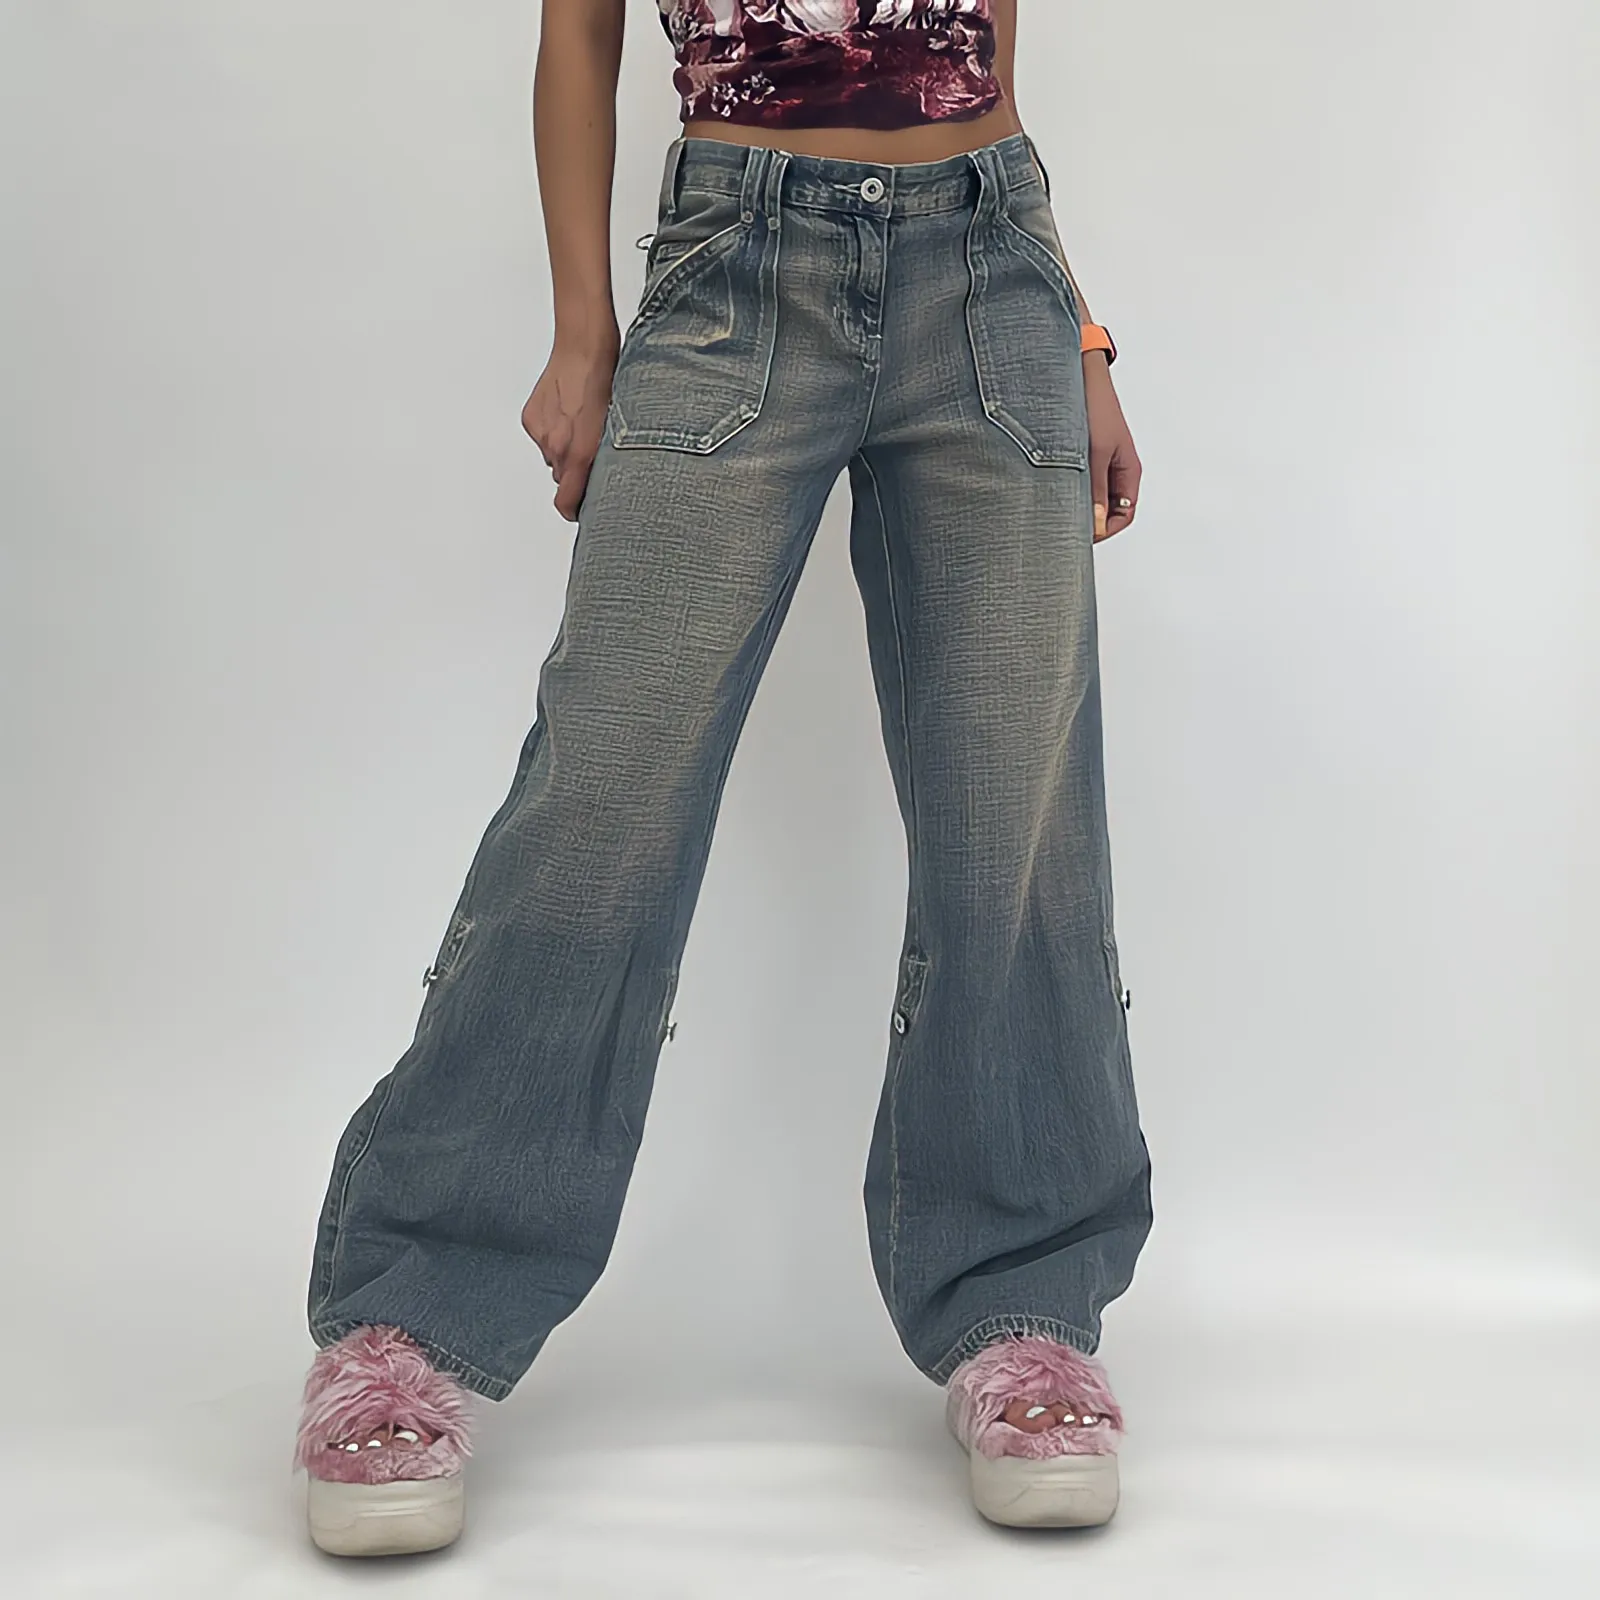 

Джинсы женские с низкой посадкой, прямые широкие брюки в американском стиле, винтажная уличная одежда 90-х, джинсовые брюки с нейтральным эффектом варенки